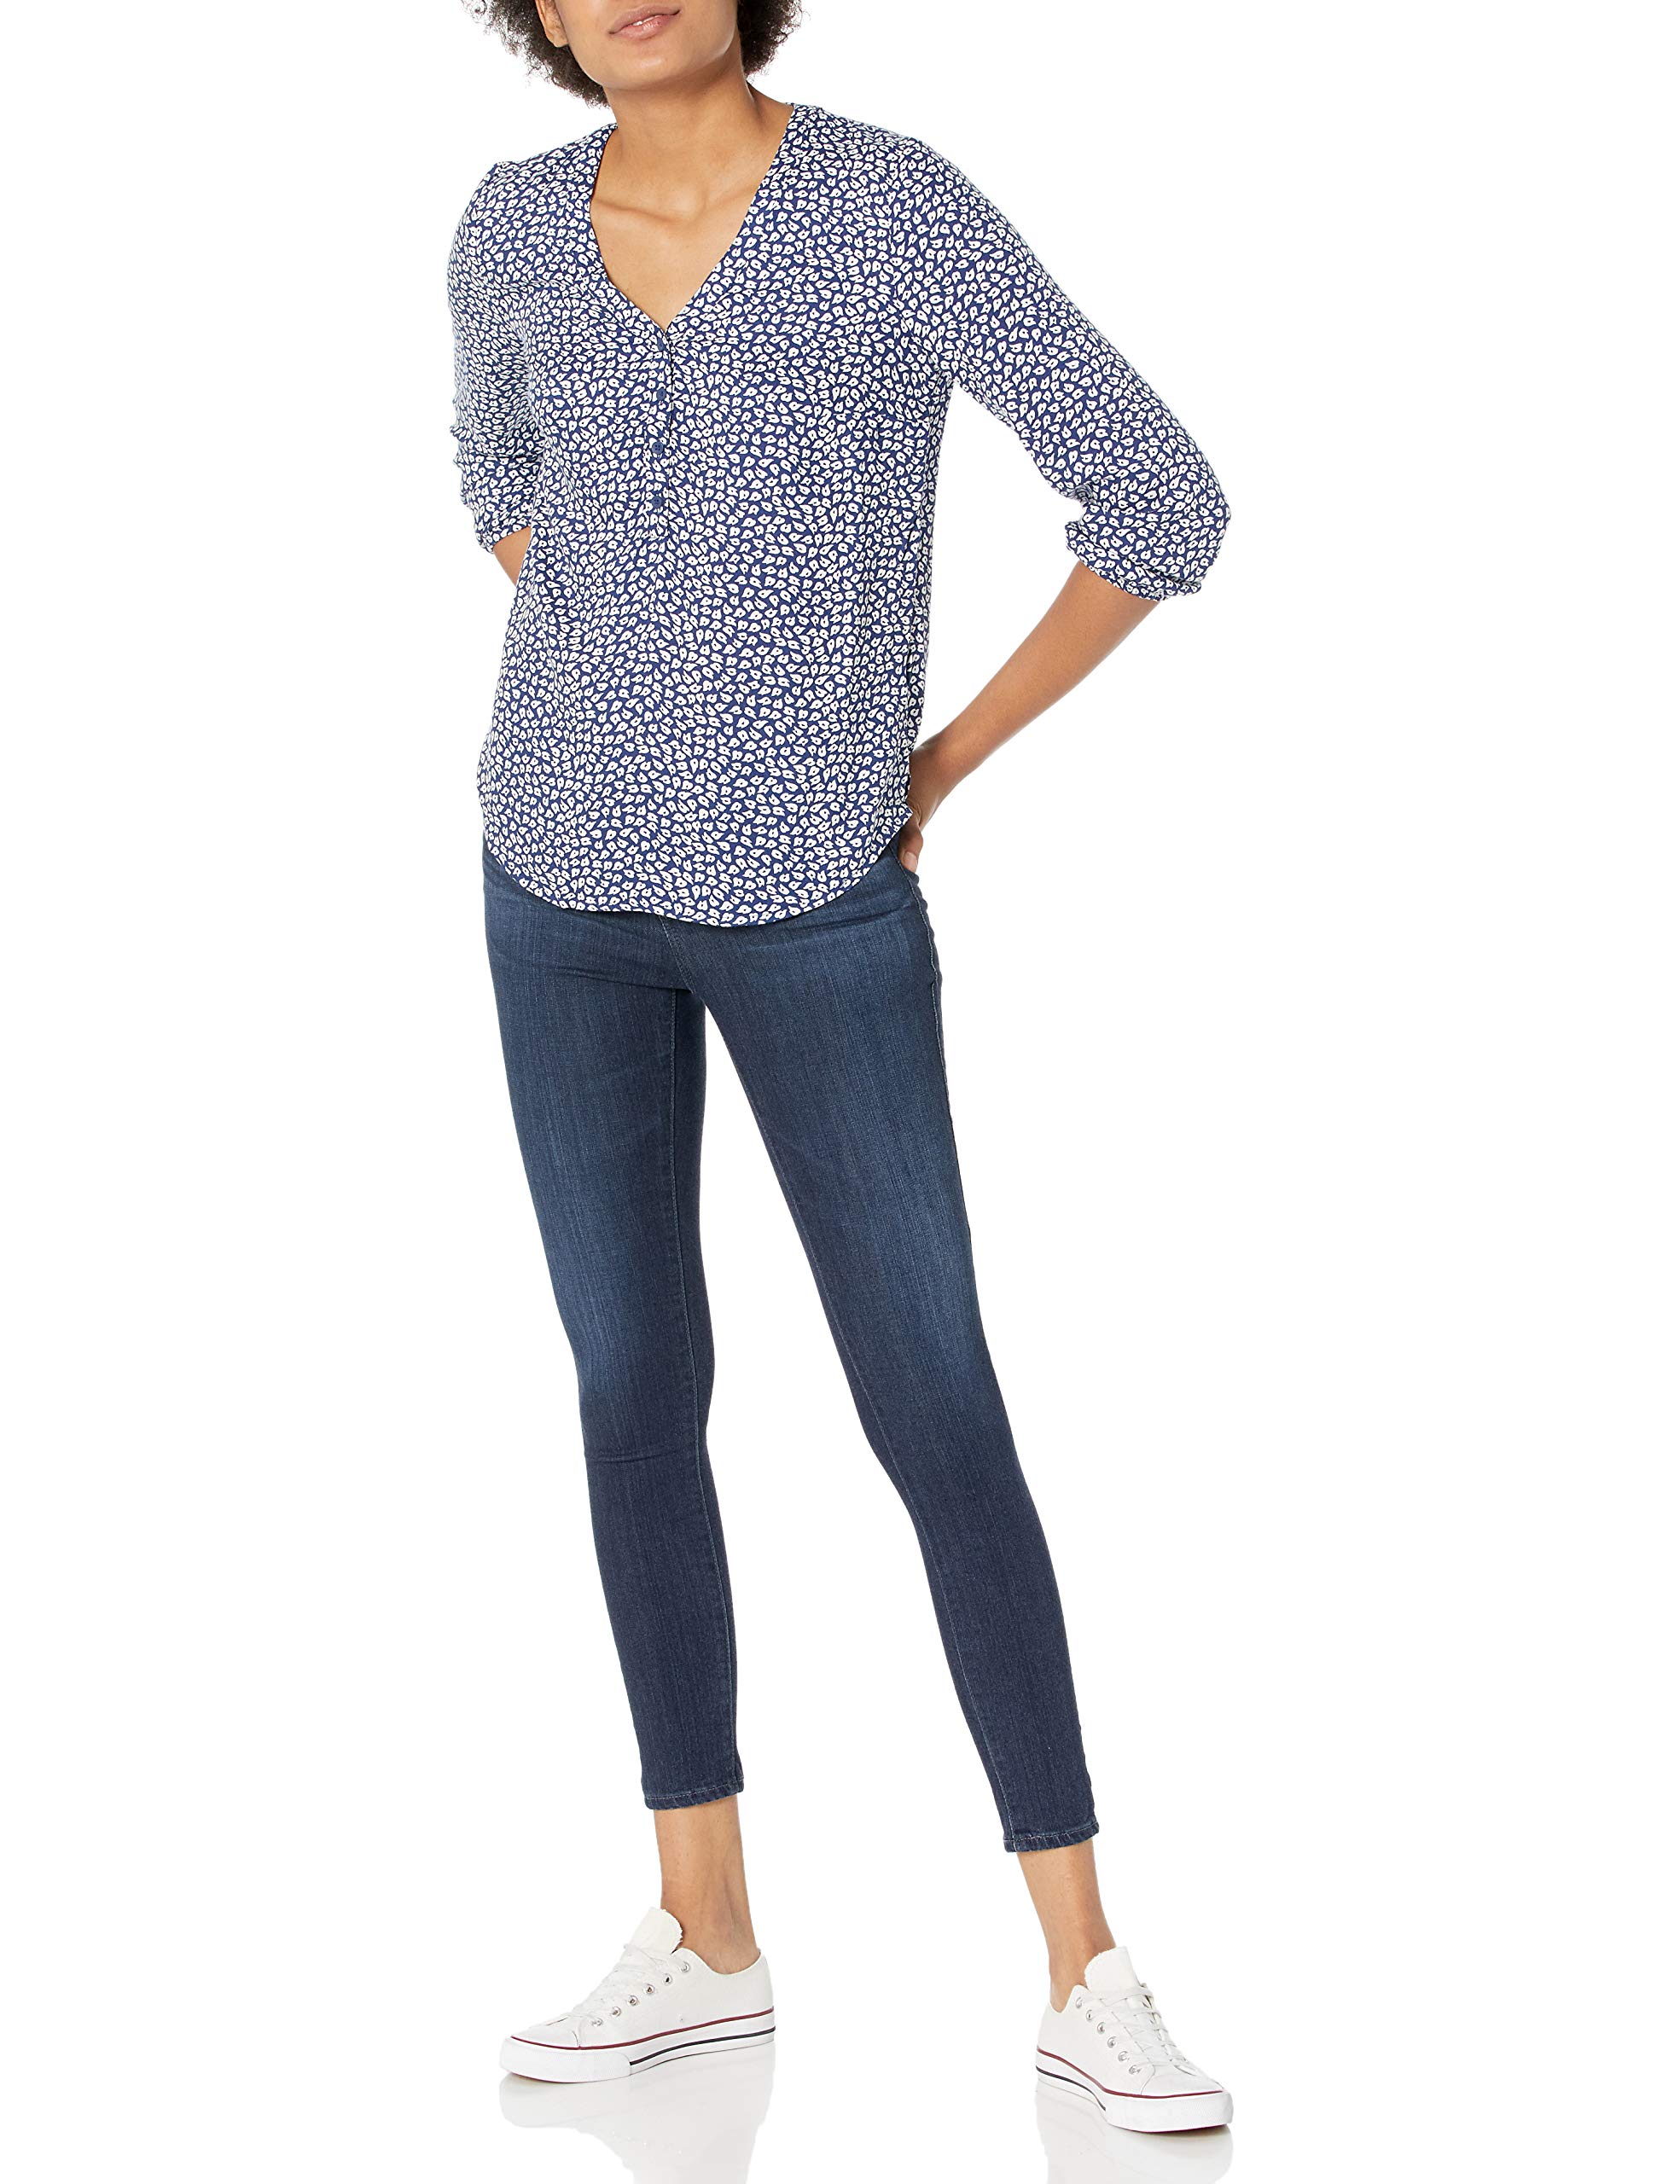 Amazon Essentials Women's 3/4 Sleeve Button Popover Shirt